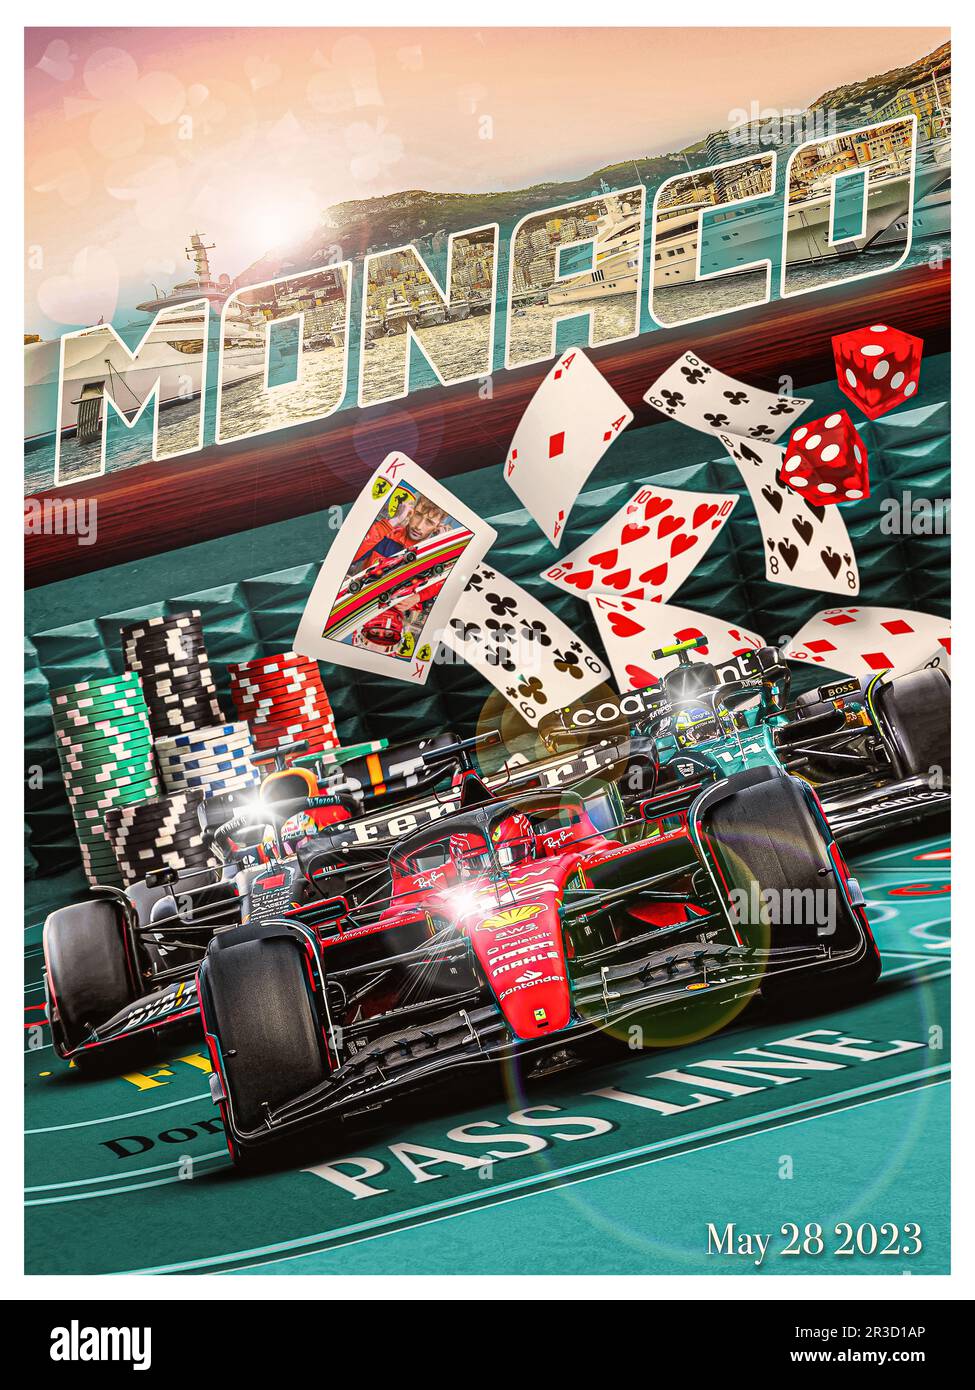 McLaren F1 Monaco Grand Prix 2021, - Photo sur Papier Affiche - 29,7 x 42  cm (A3)